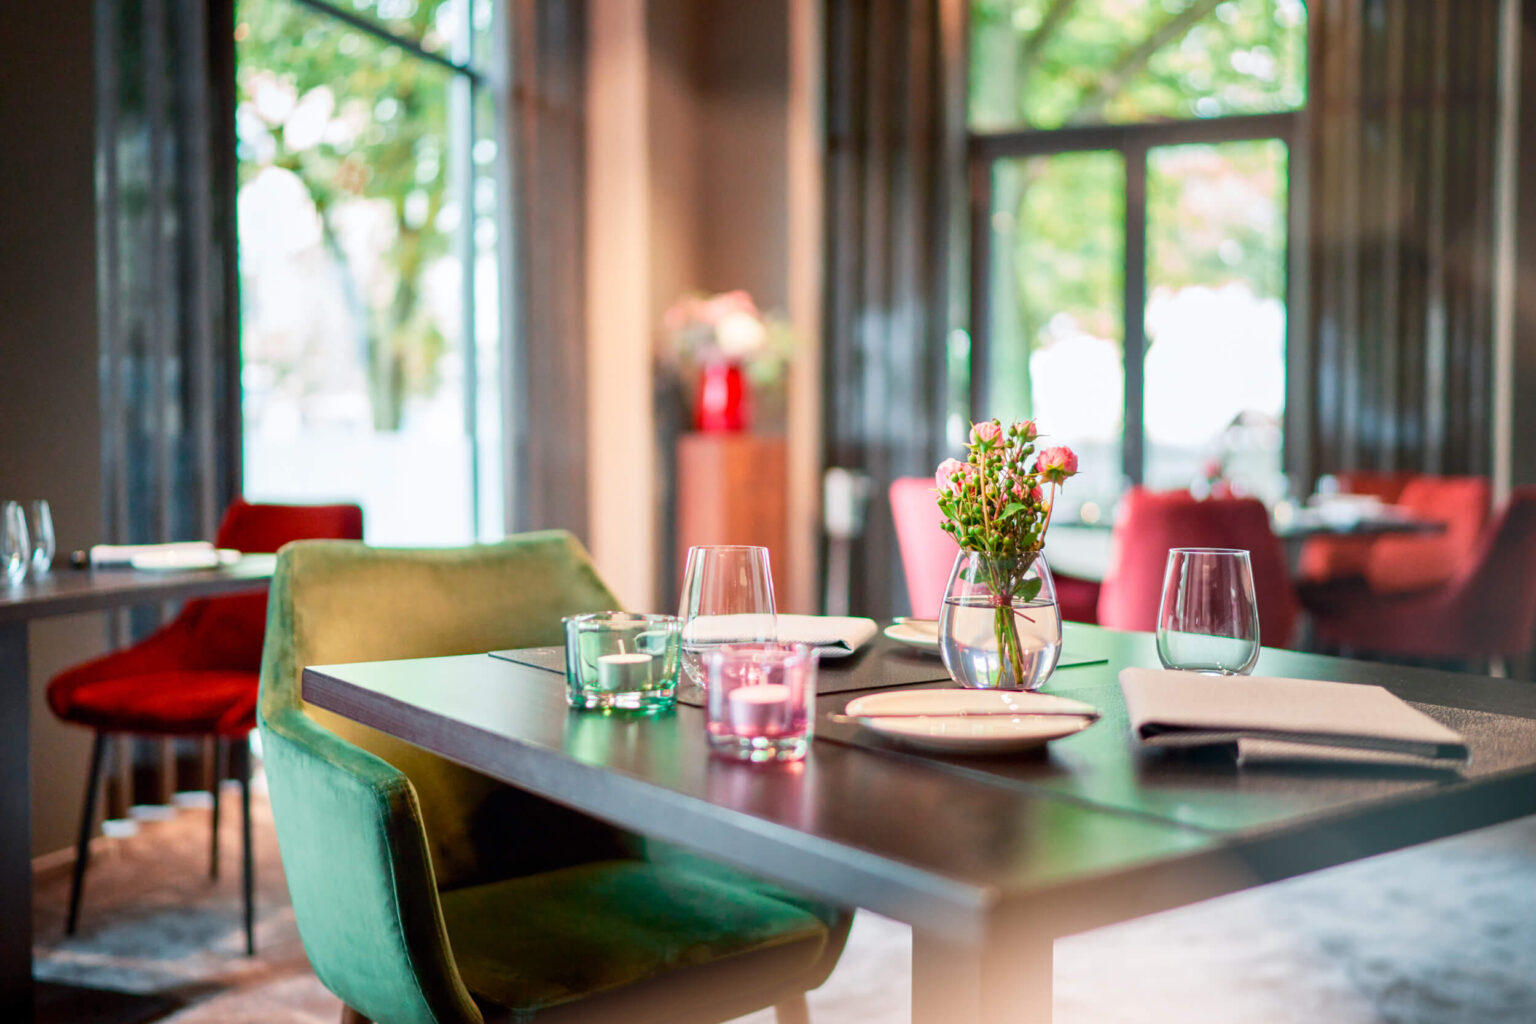 Gourmet-Restaurant ESPLANADE – Tisch. Es zeigt im Vordergrund einen gedeckten Tisch im ESPLANADE Gourmet-Restaurant. Der Hintergrund ist unscharf und weitere Tische sowie grosse Fenster mit einem Ausblick ins Gruene sind darin zu sehen. Die Datei ist ein Foto im JPEG-Format.